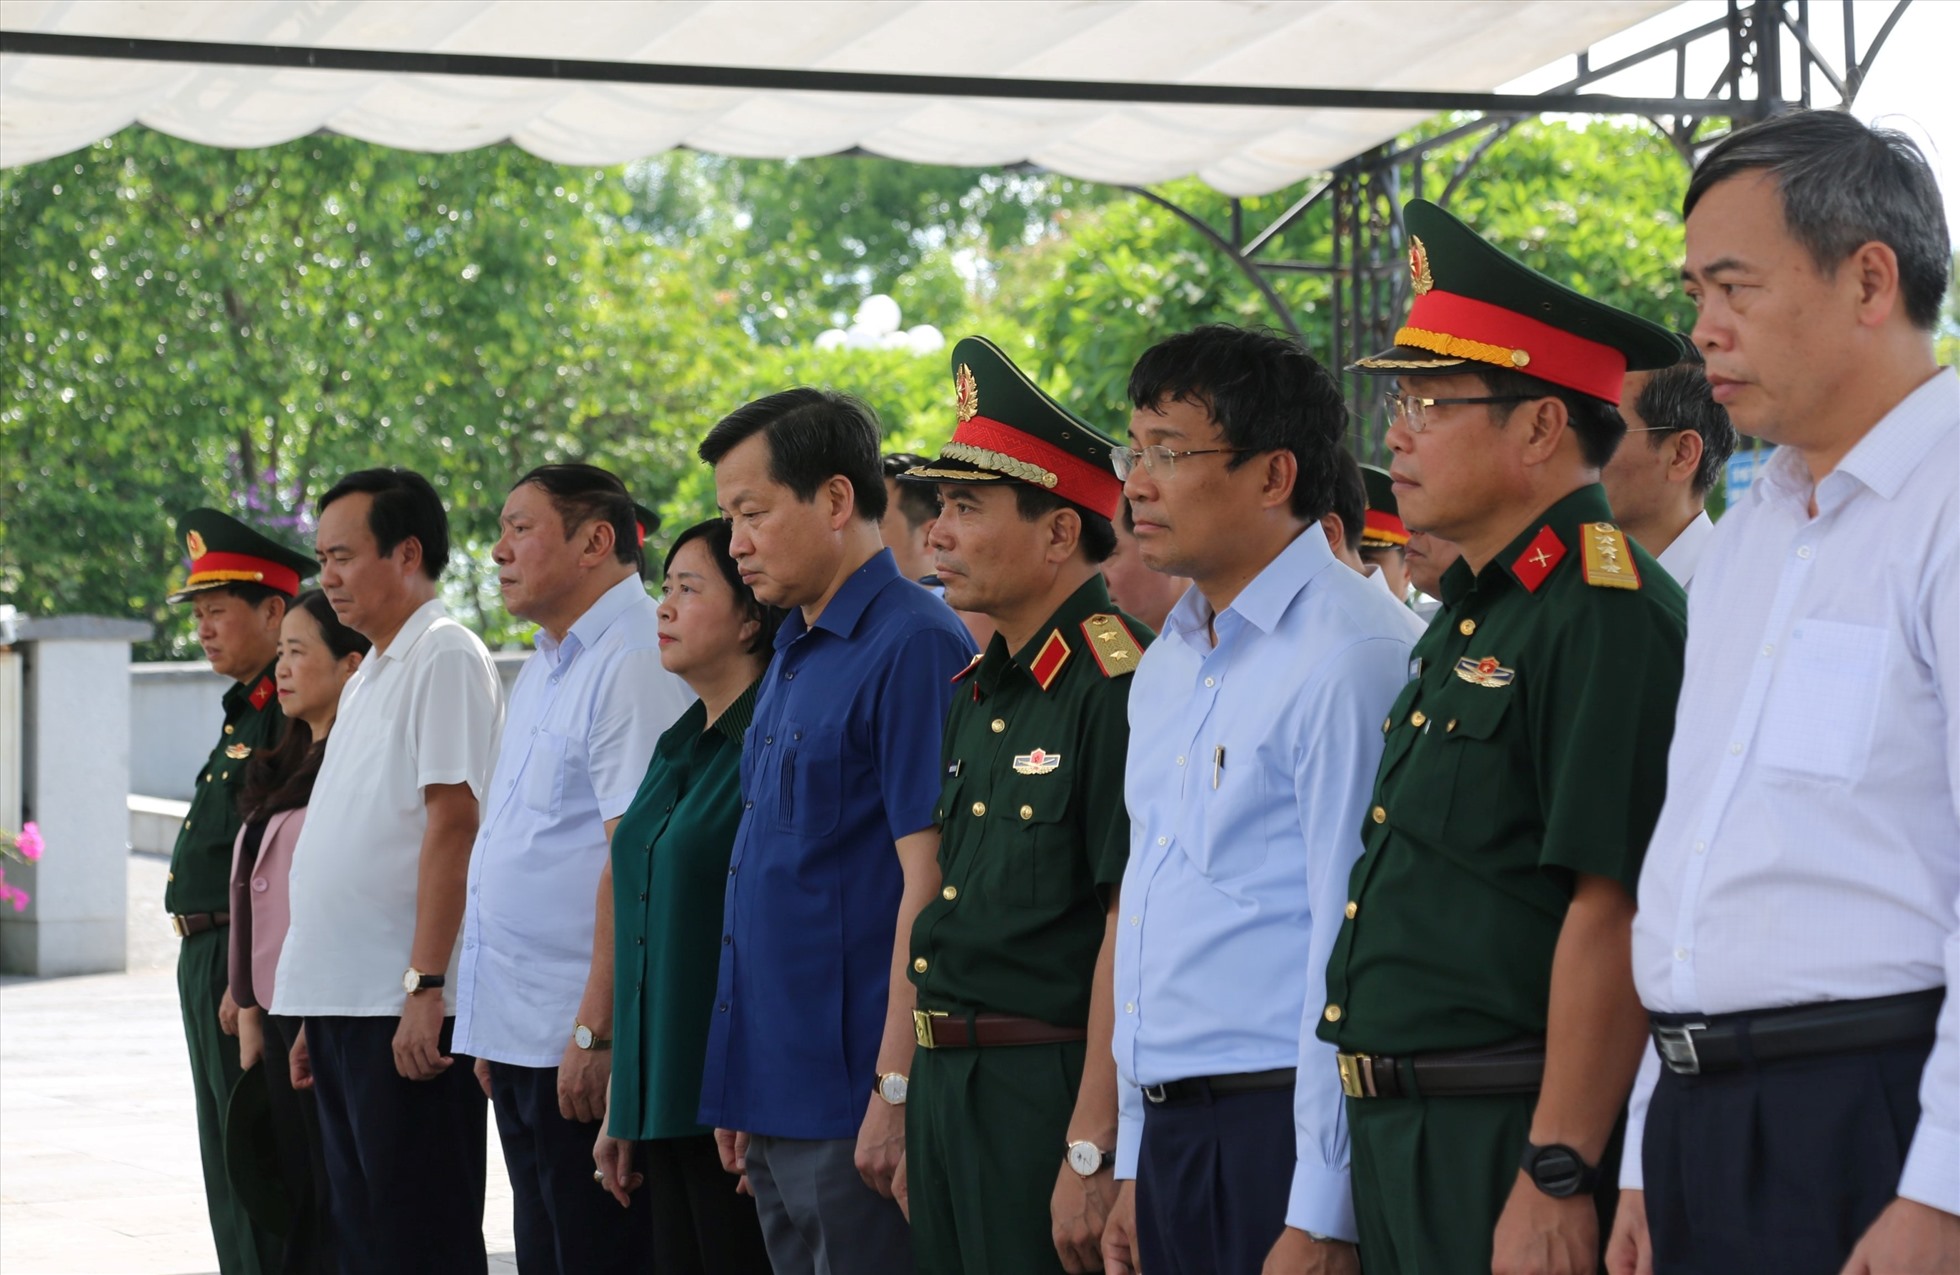 Phó Thủ tướng Lê Minh Khái cùng đoàn công tác dành phút tưởng niệm tại Nghĩa trang liệt sĩ Quốc gia Đường 9. Ảnh: Hưng Thơ.